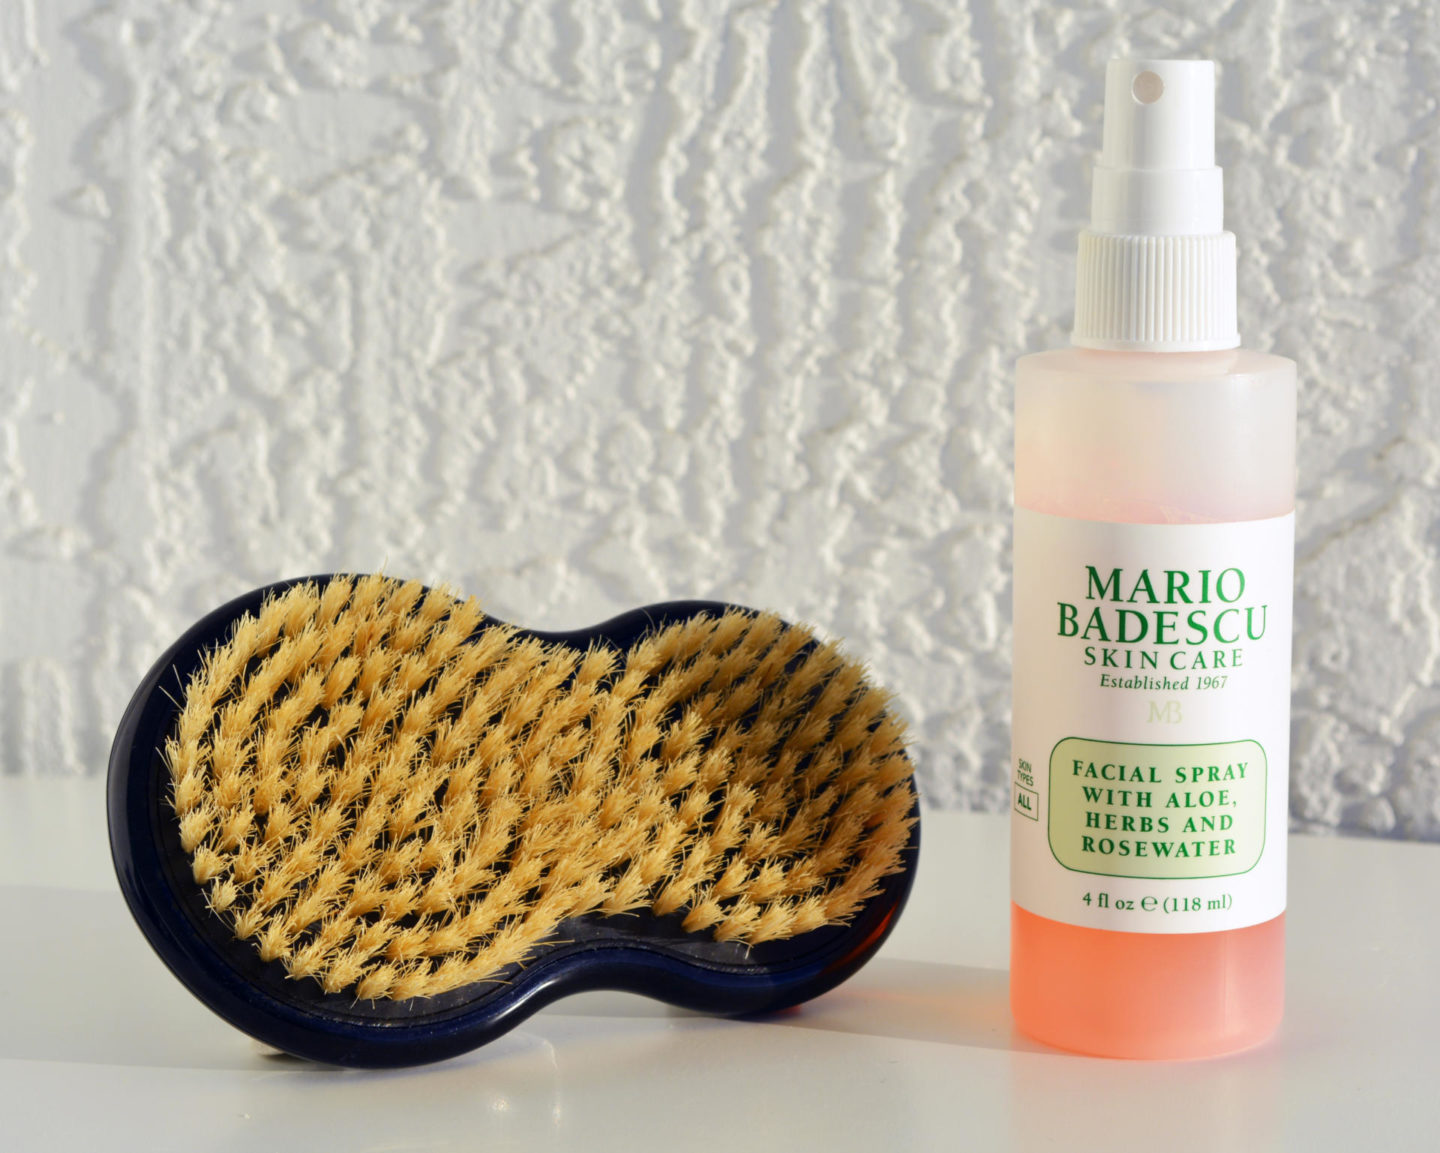 Mario Badescu Aloe, Herbs & Rosewater Facial Spray, Sephora Collection Dry Revive: Dry Body Brush